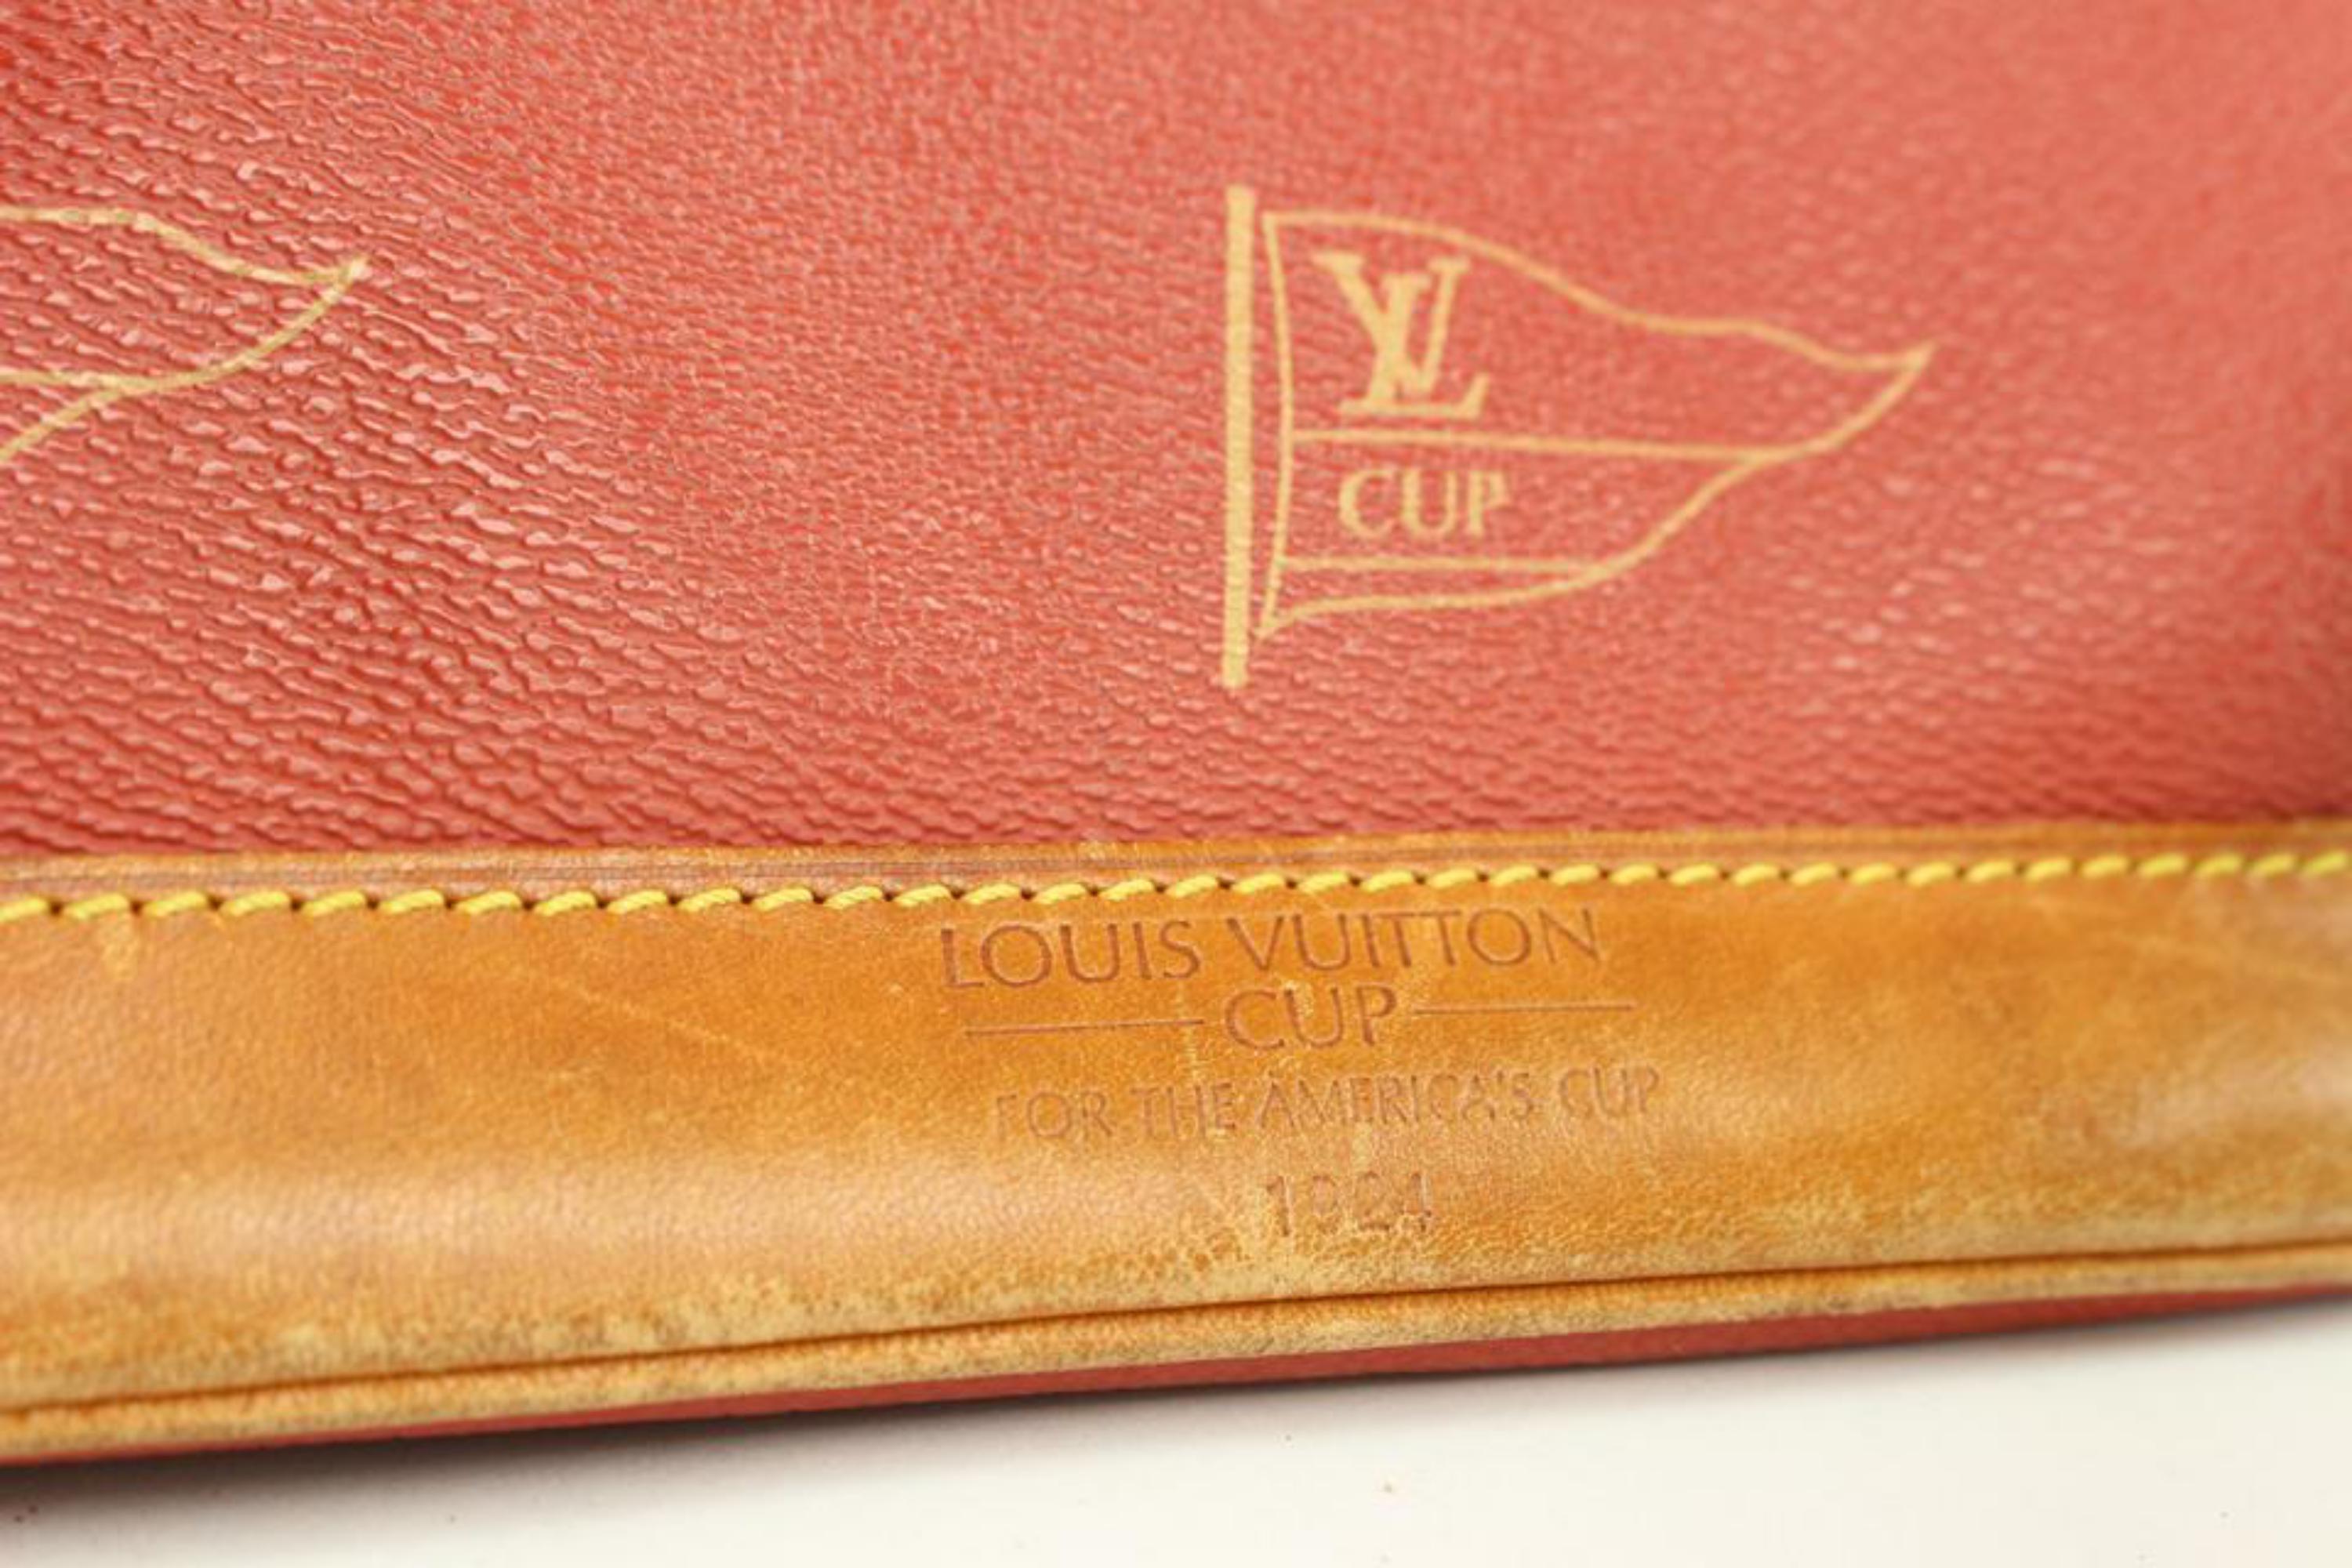 Louis Vuitton Red LV Cup Le Touquet Hobo Bag 1LV54a 1